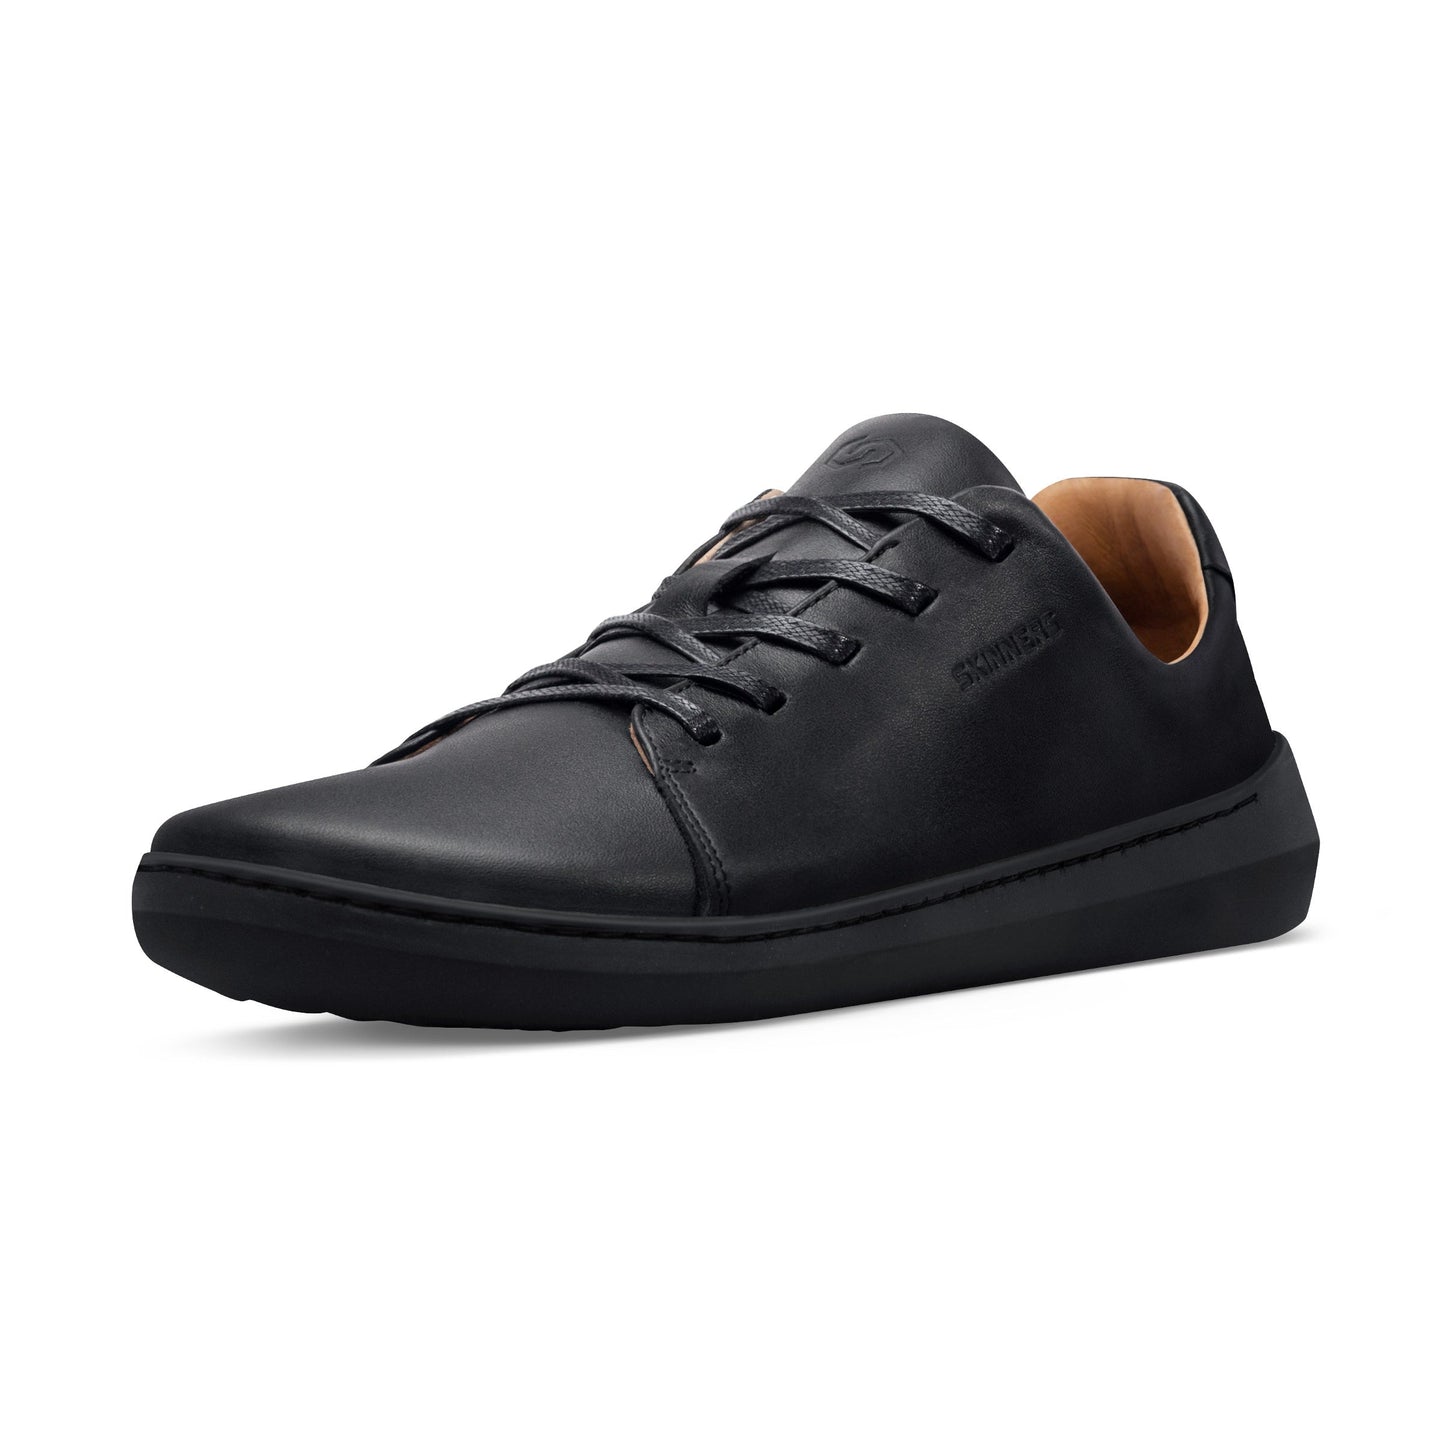 Mærkbare Walker barfods sneakers til kvinder og mænd i farven black / black, vinklet